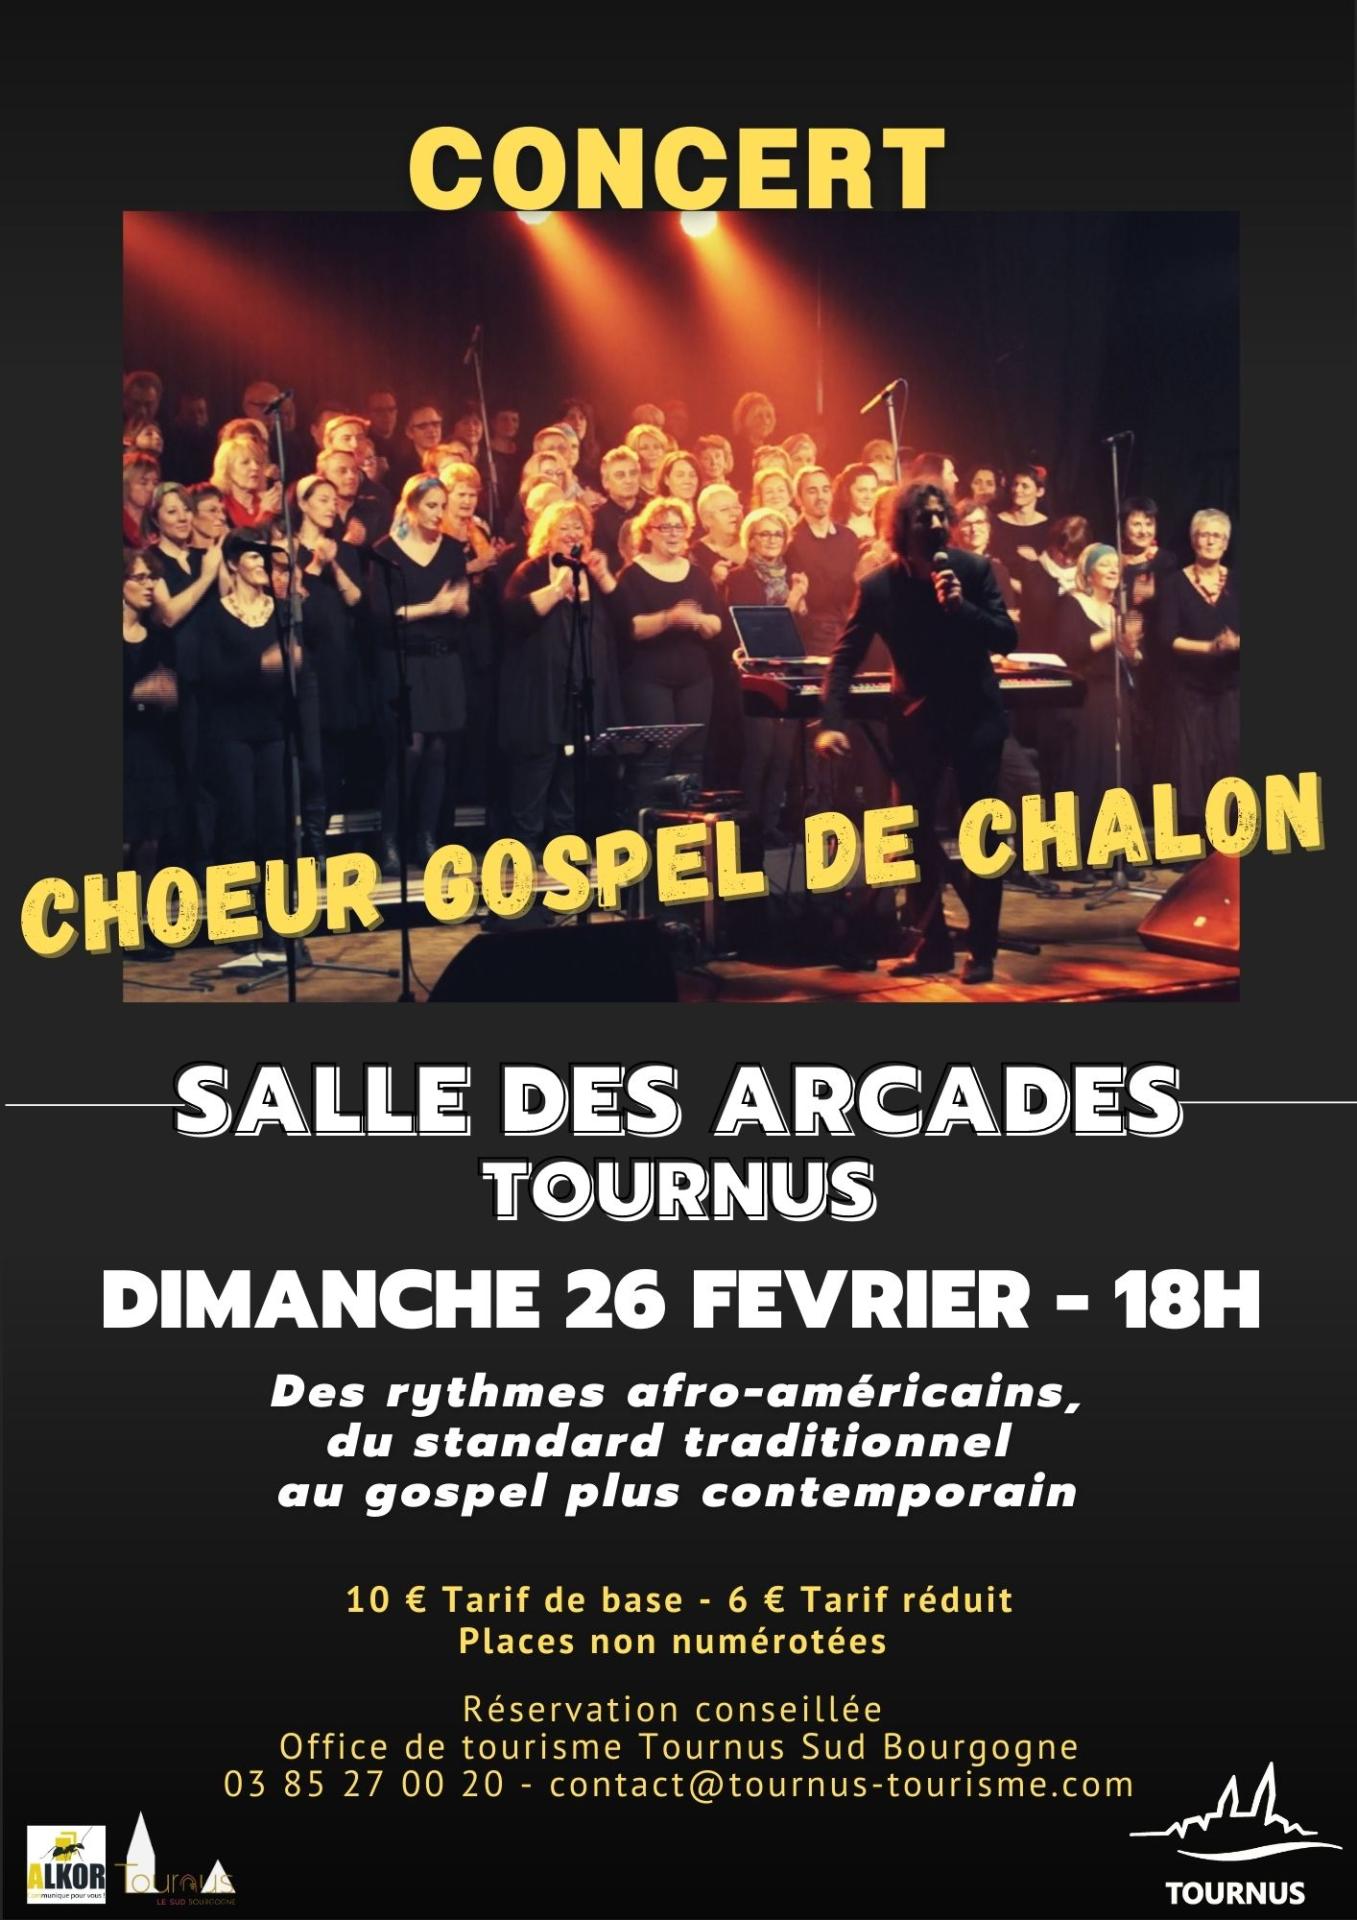 Concert "Choeur Gospel de Chalon"